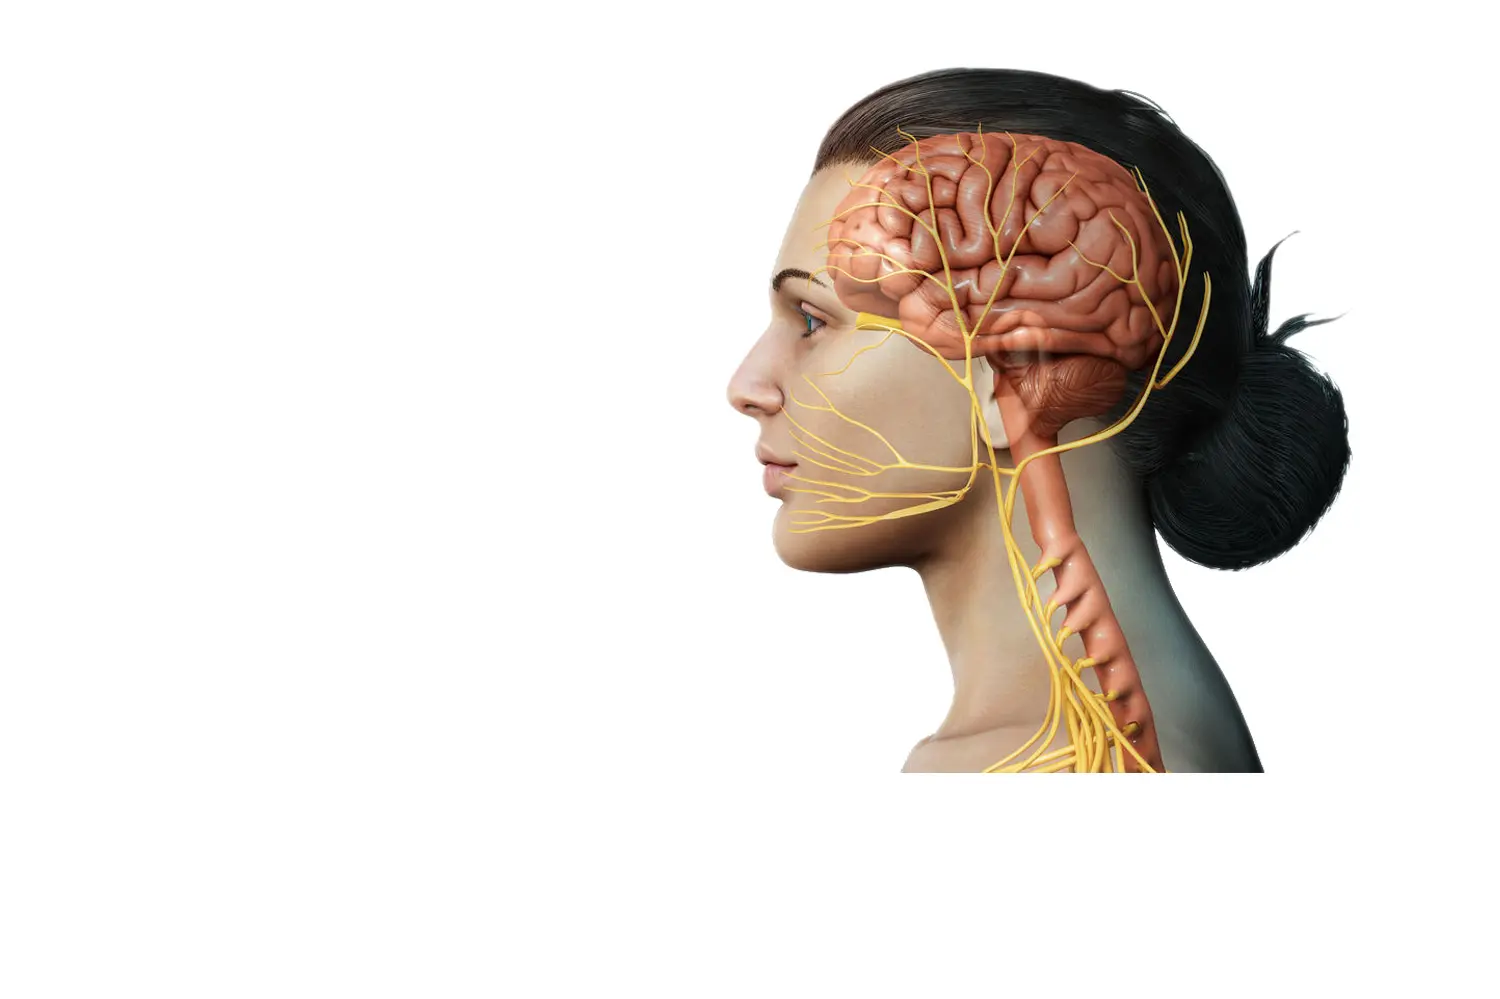 Doctor de Quintana brain surgery Compression of cranial nerves Trigeminal neuralgia